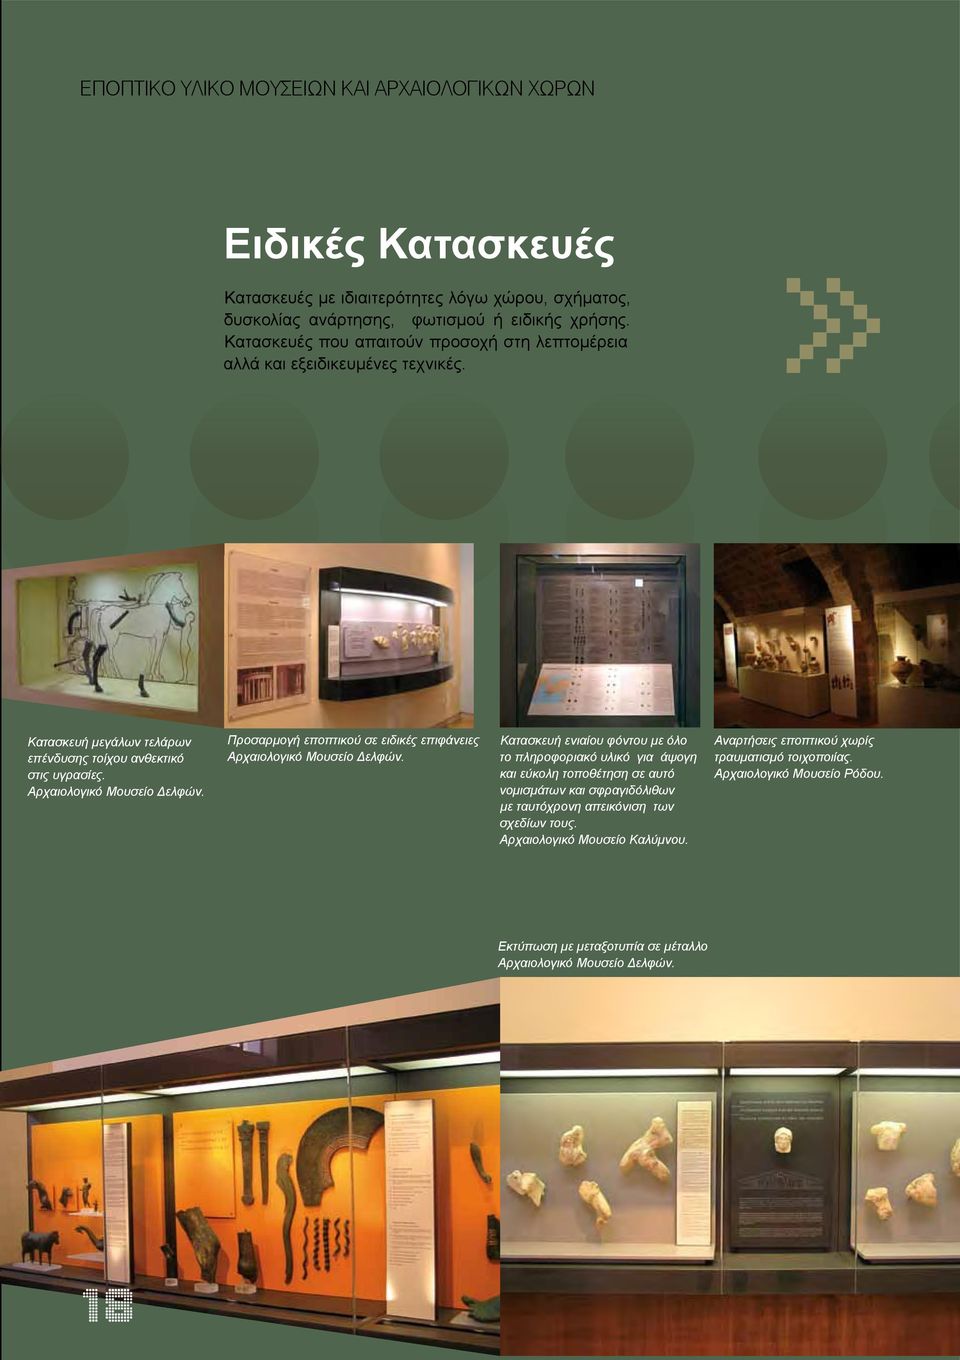 Προσαρμογή εποπτικού σε ειδικές επιφάνειες Αρχαιολογικό Μουσείο Δελφών.